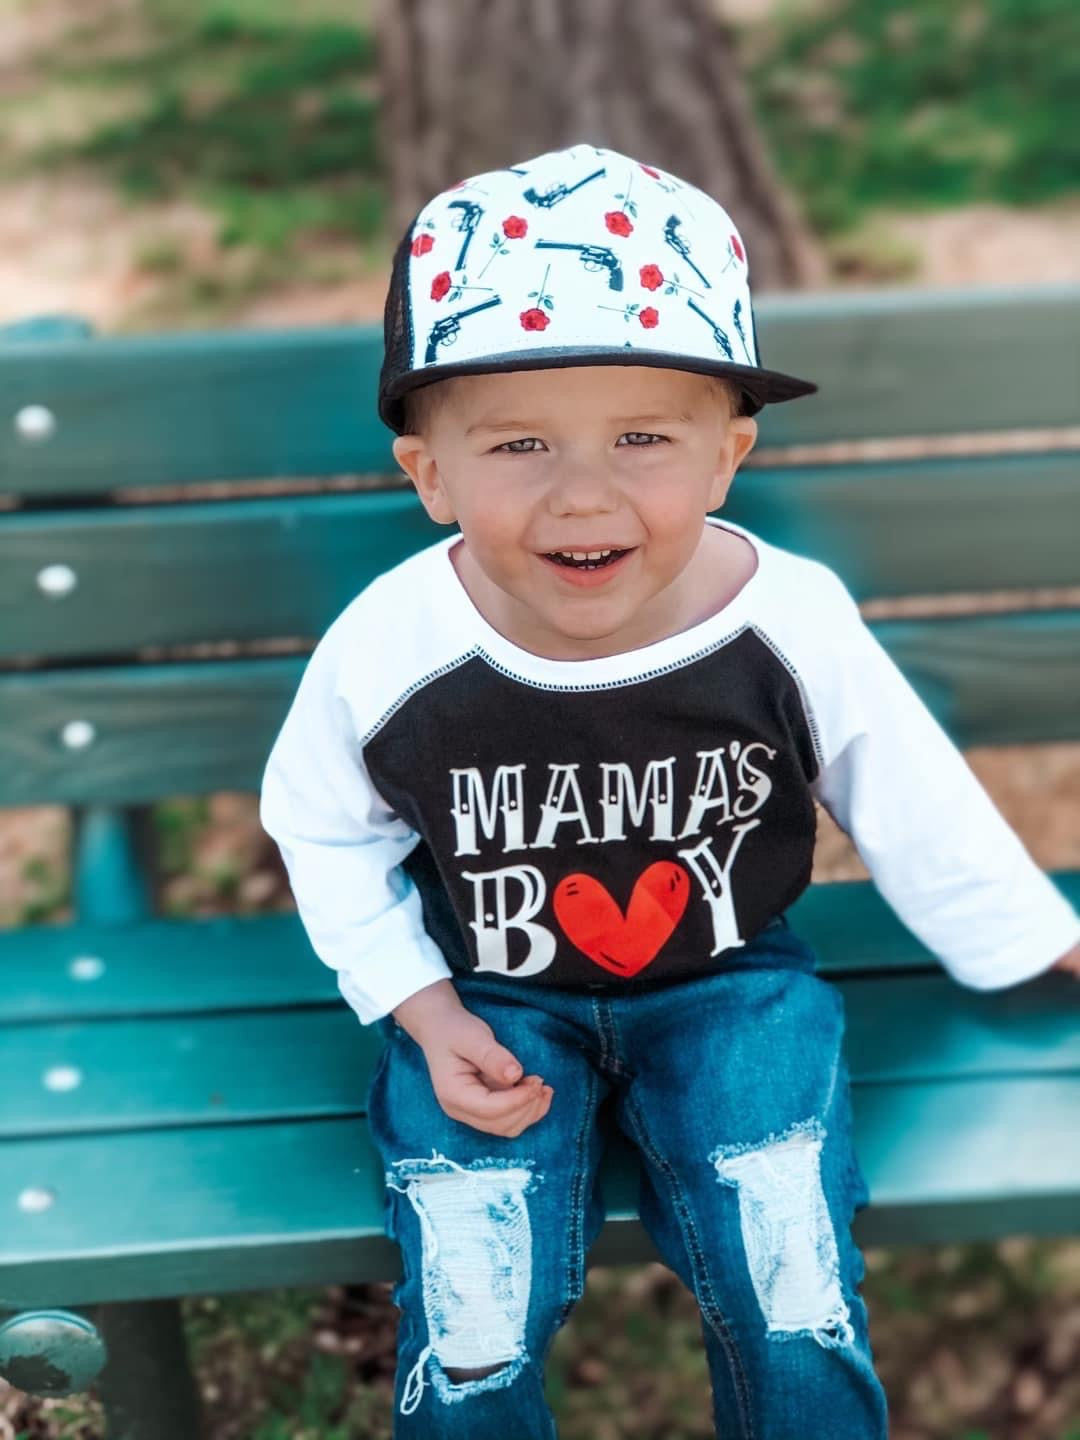 MAMA'S BOY Heart Shirt